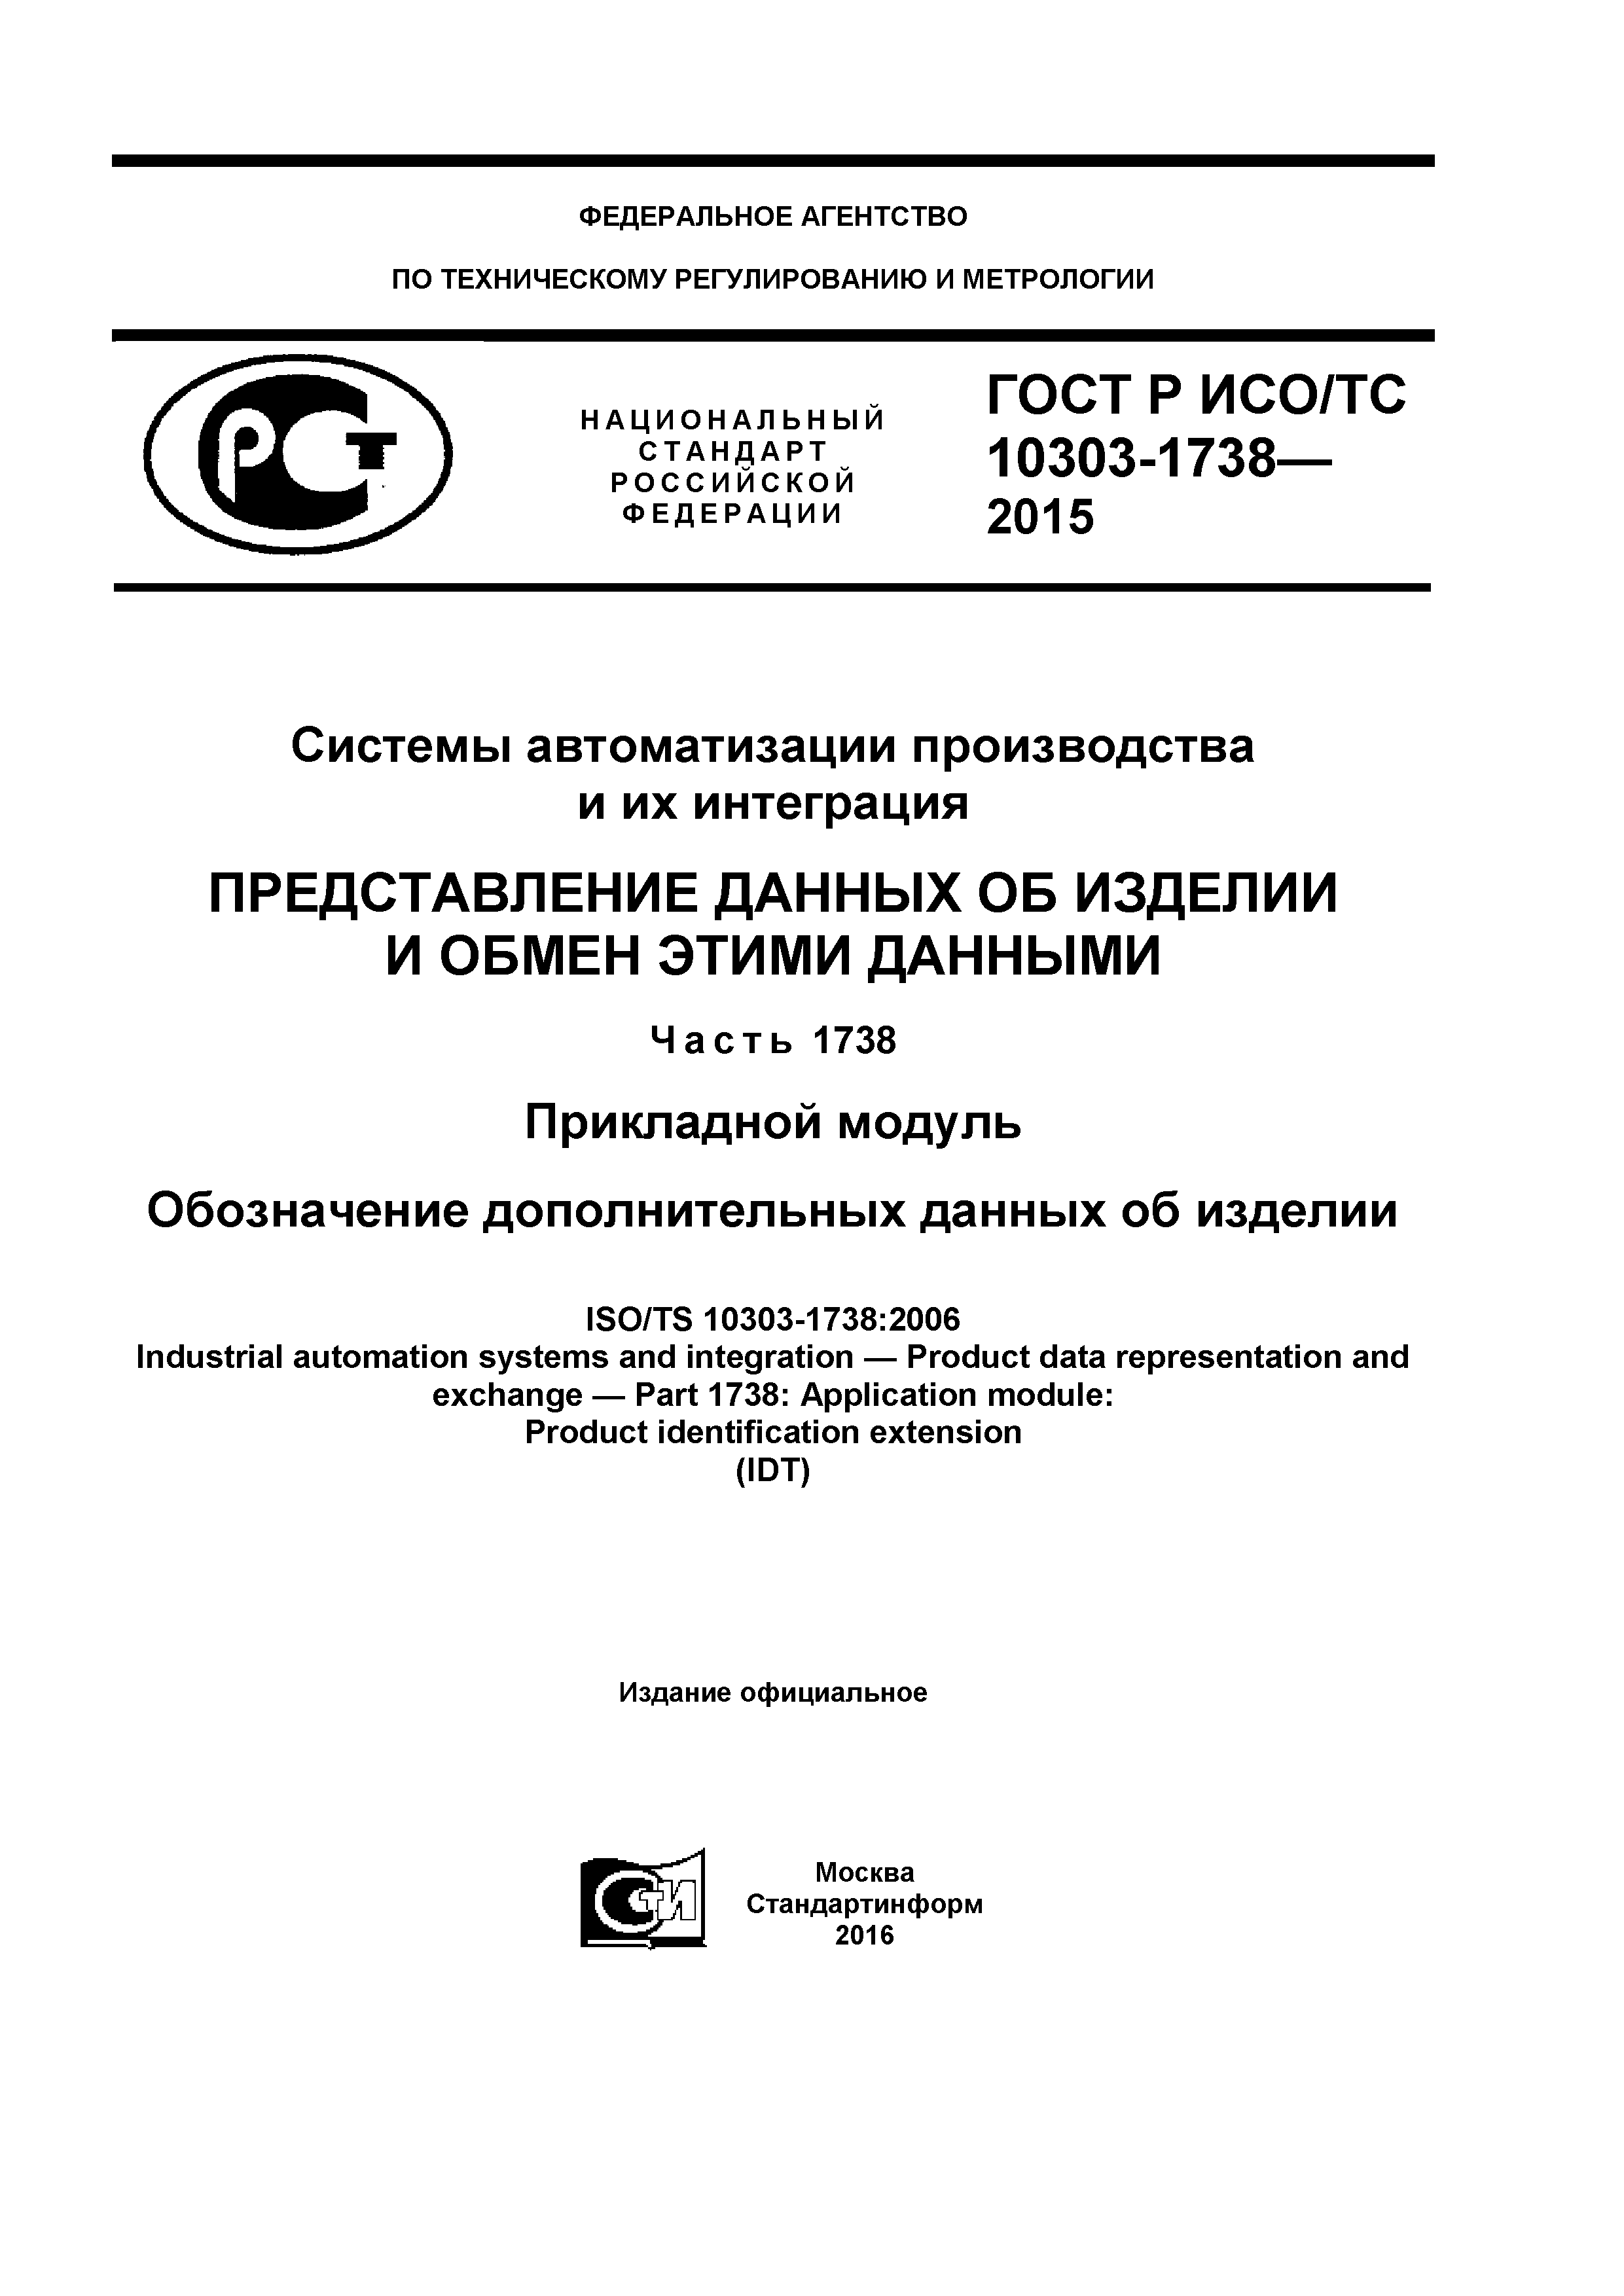 ГОСТ Р ИСО/ТС 10303-1738-2015